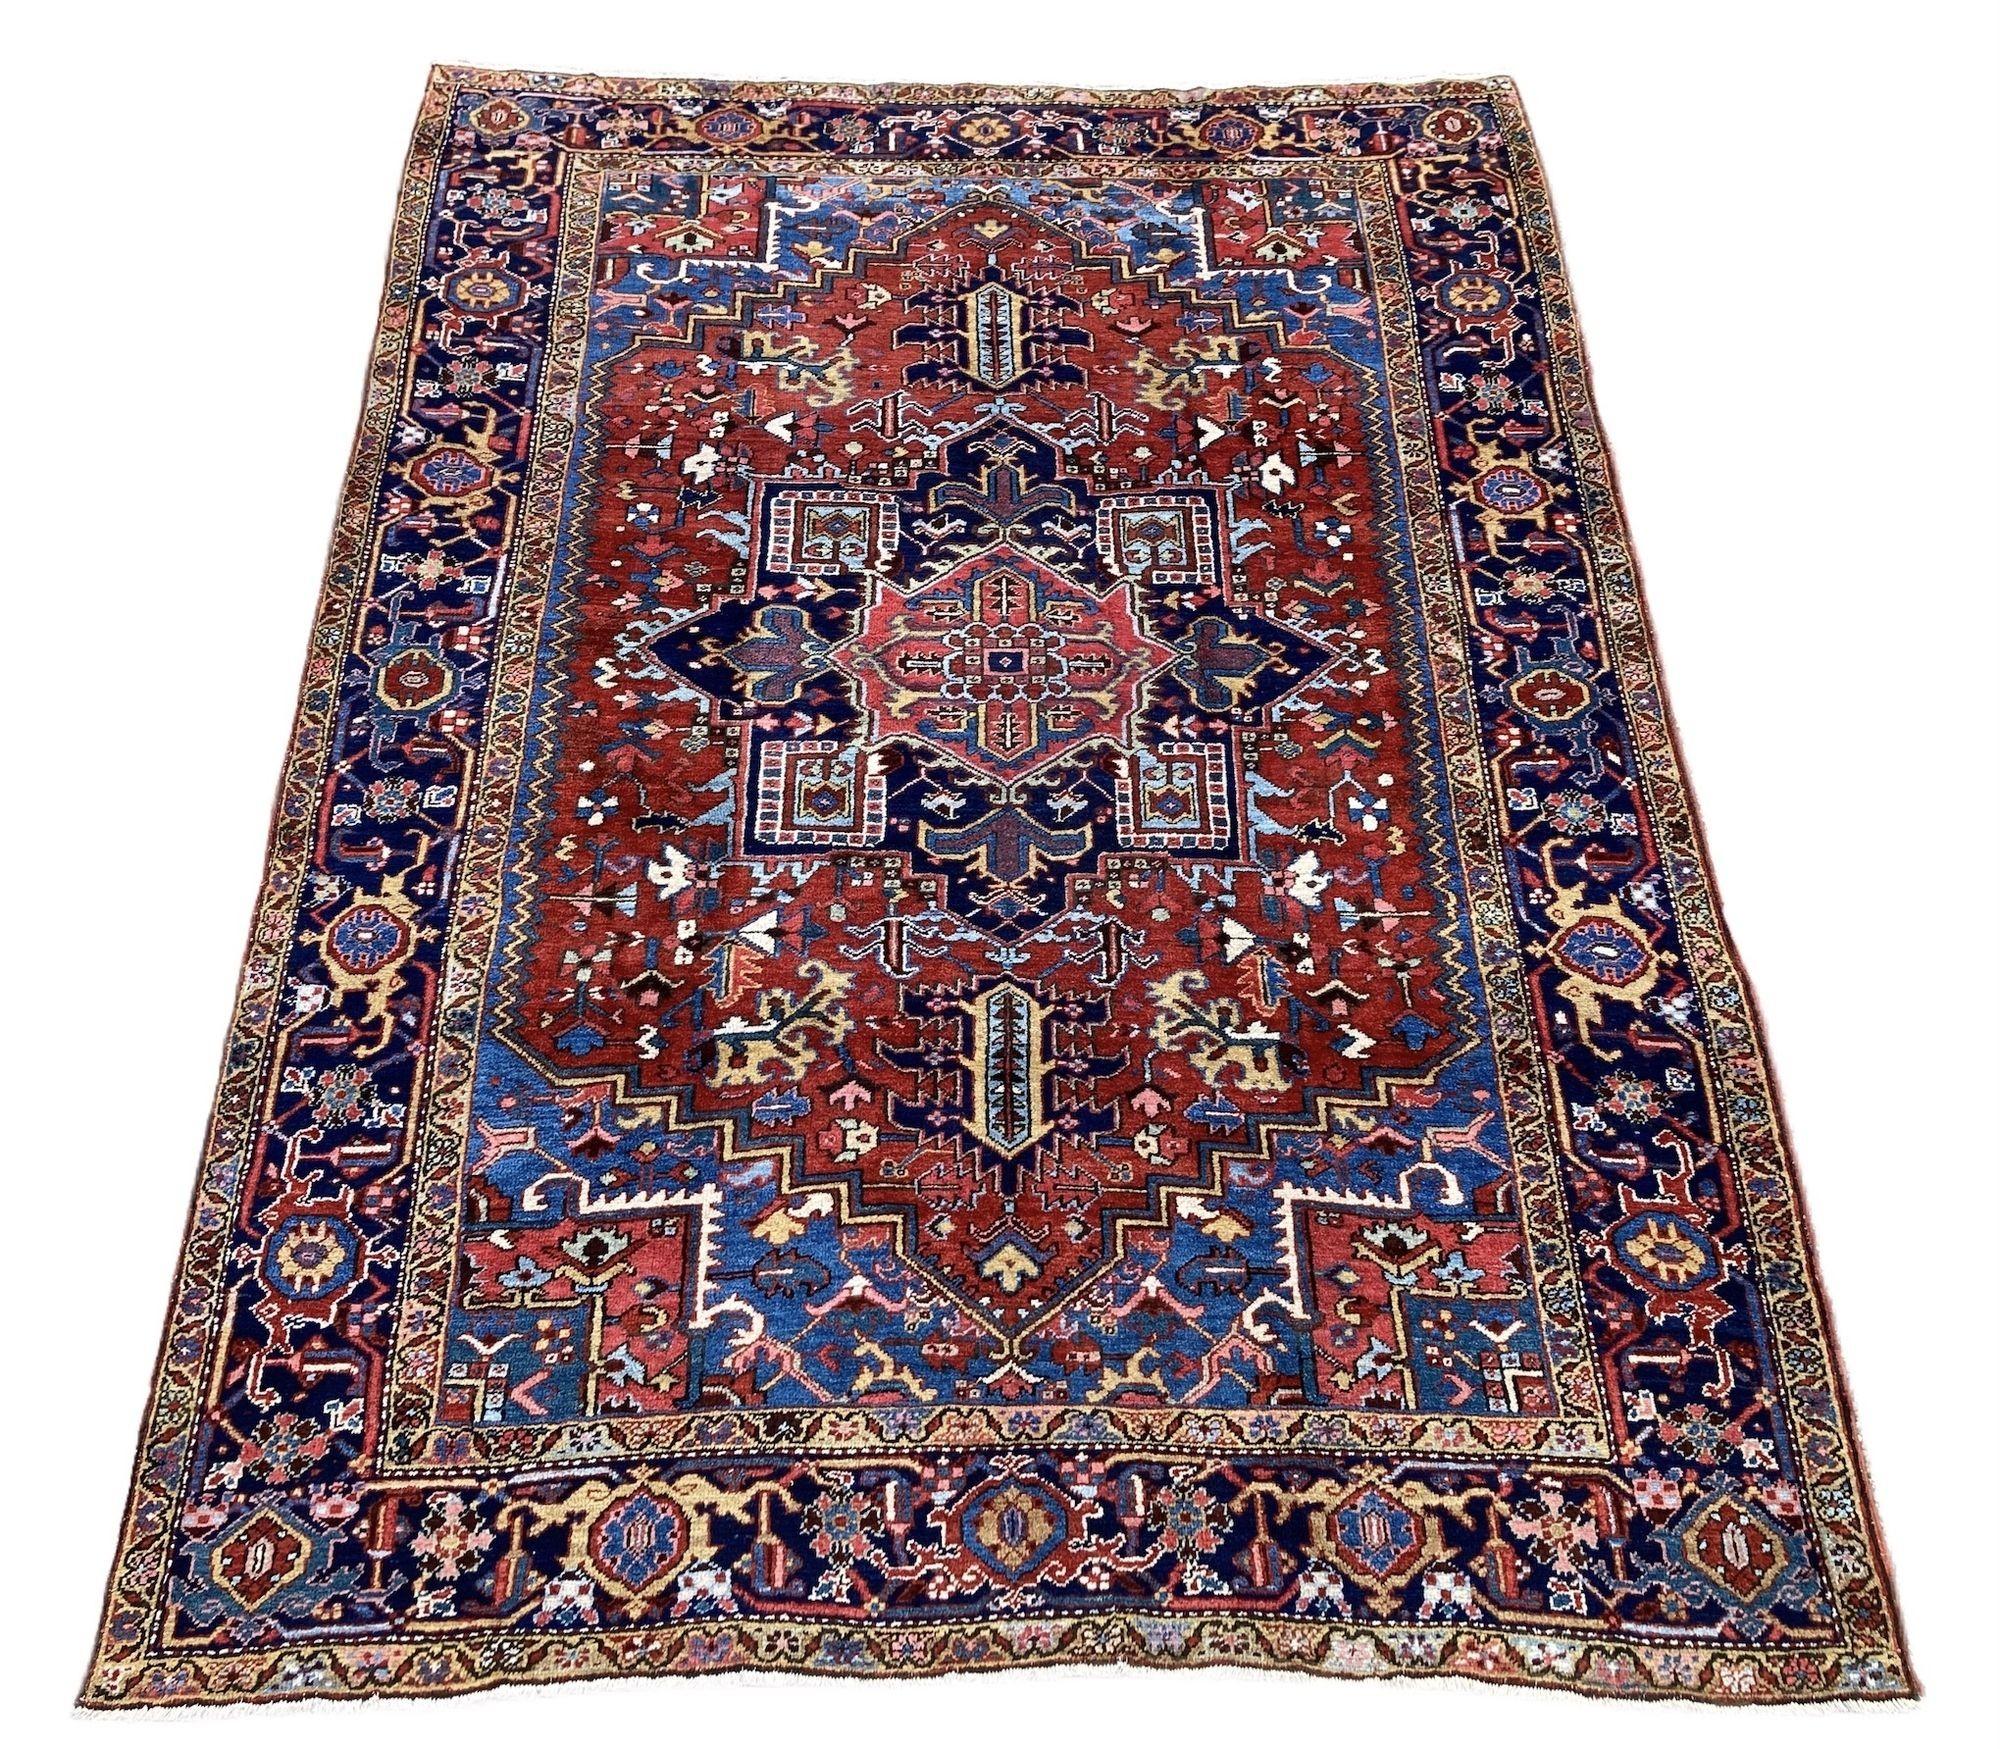 Ein schöner antiker Heriz-Teppich, handgeknüpft um 1900. Das Design zeigt ein großes, einzelnes Medaillon auf einem ziegelroten Feld und einem tiefen indigoblauen Rand. Ein sehr dekorativer Teppich mit tollen Sekundärfarben.
Größe: 2,95m x 2,23m